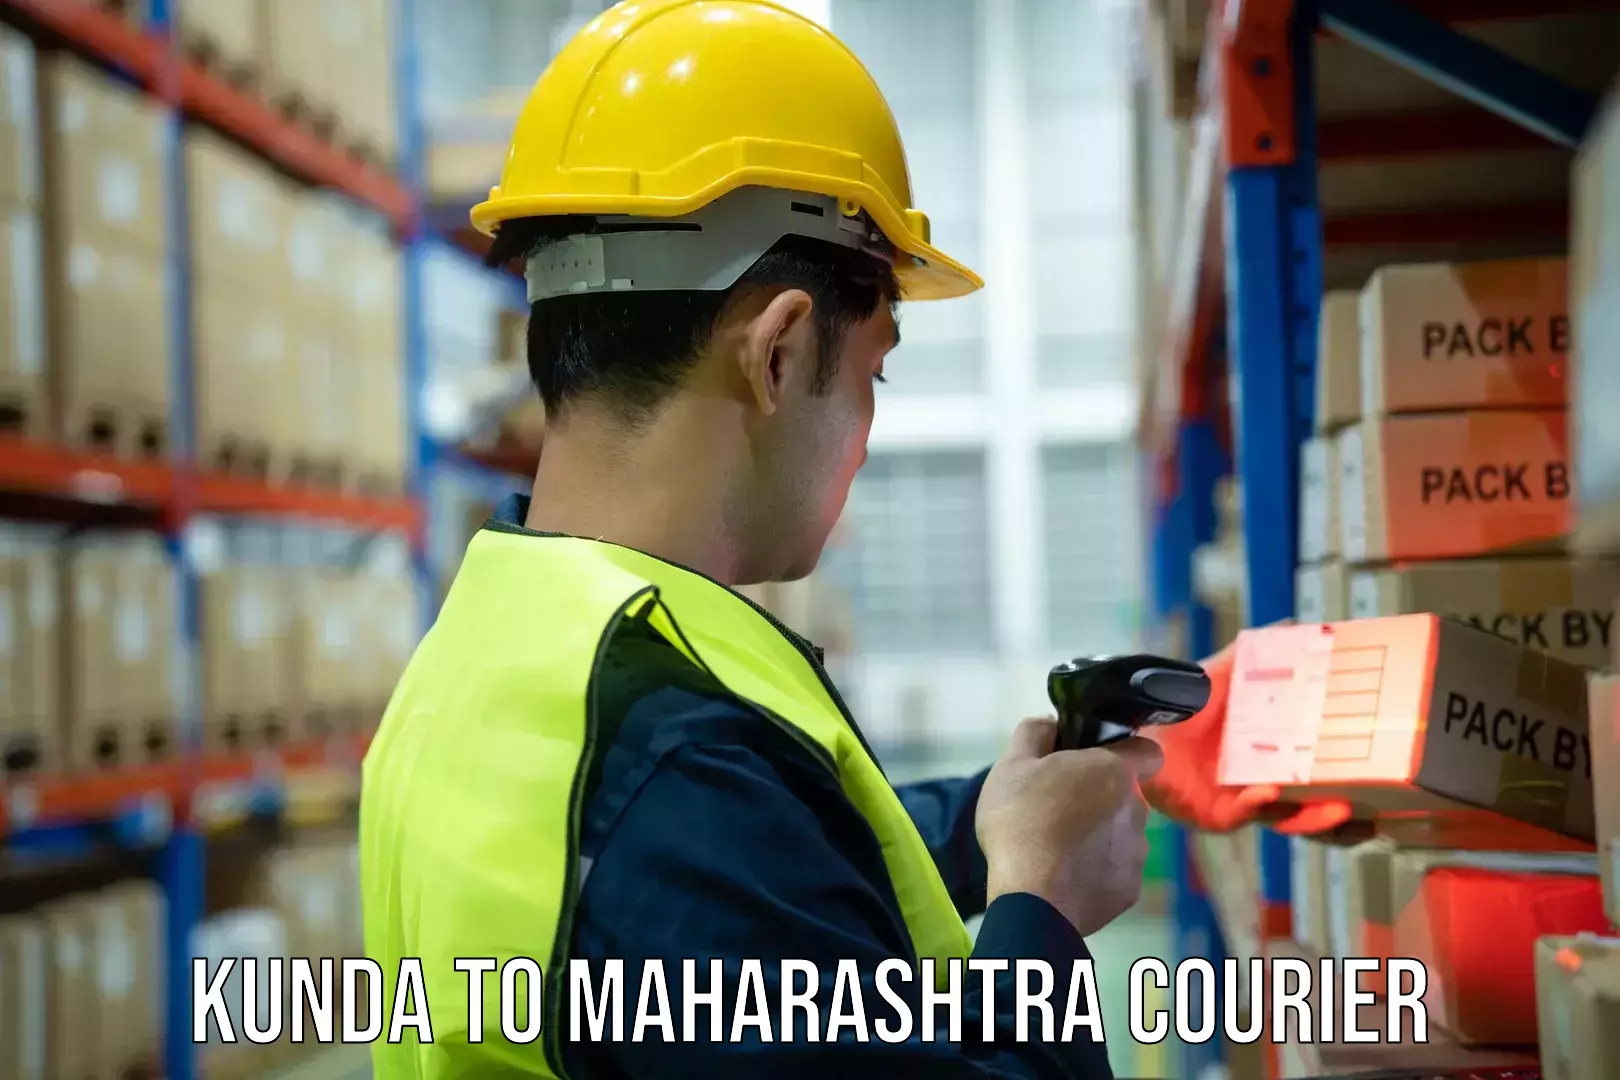 Efficient courier operations Kunda to Maharashtra